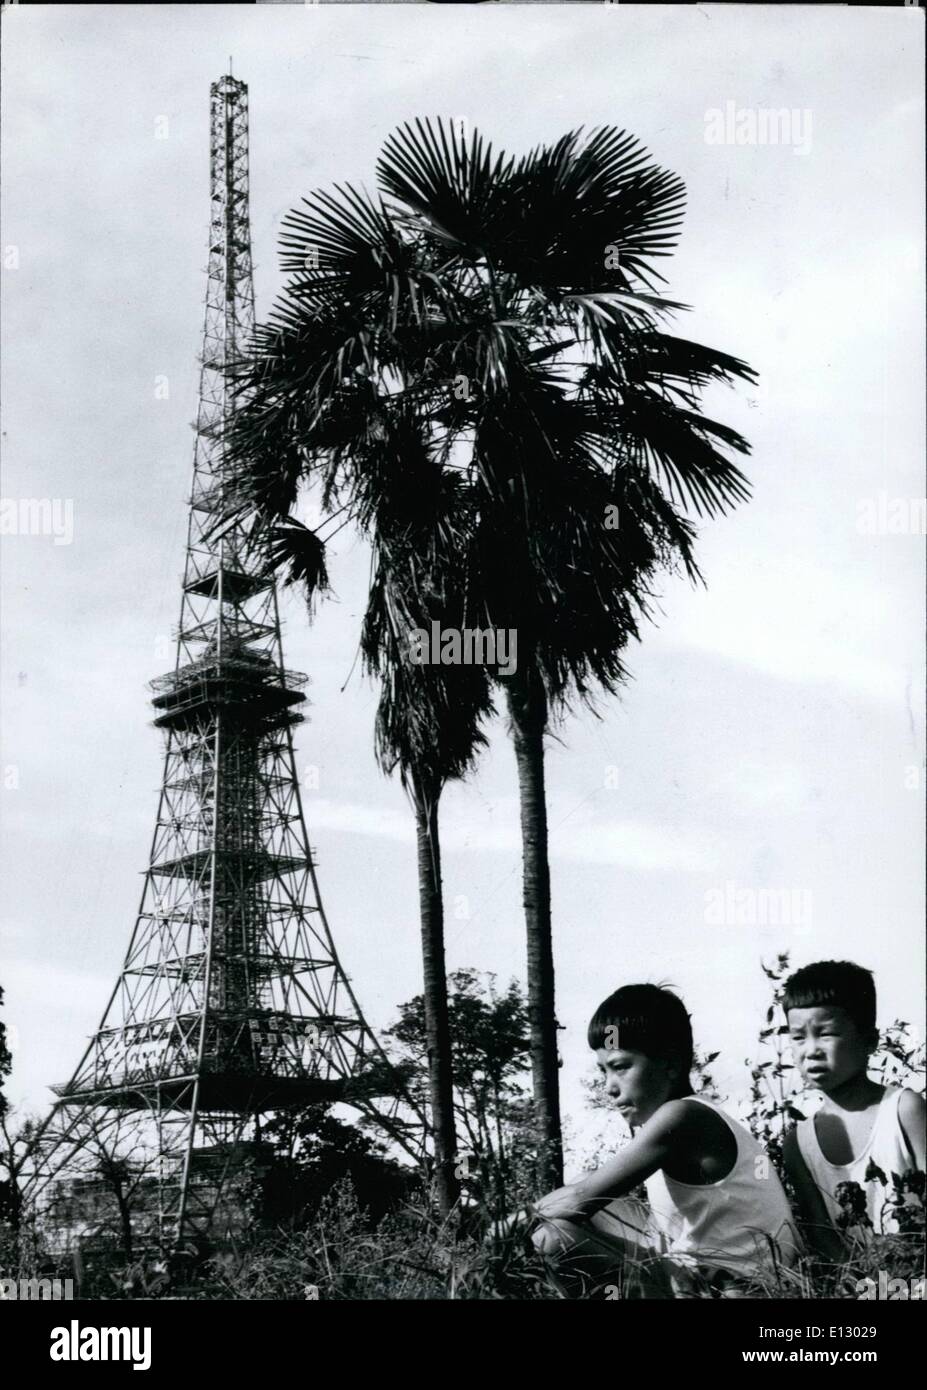 El 25 de febrero, 2012 - Busque Oriental Tokyo's ''''Eiffel Tower. Aunque el nuevo Tokio 1.082 pies TV Tower será un duplicado de la famosa Torre Eiffel de París, el paisaje circundante será diferente. Y a pesar del hecho bien conocido de que París es considerado como un "hot spot", no es lo suficientemente caliente como para hacer crecer los árboles de palma. La torre será de 40 pies más alto que el de París y está construido para soportar el tifón vientos con una velocidad de 200 millas por hora. El viento del tifón más alta registrada hasta ahora en Tokio fue de 136,4 km/h en 1939, fue nombrada la ans Muroto Tifón Foto de stock